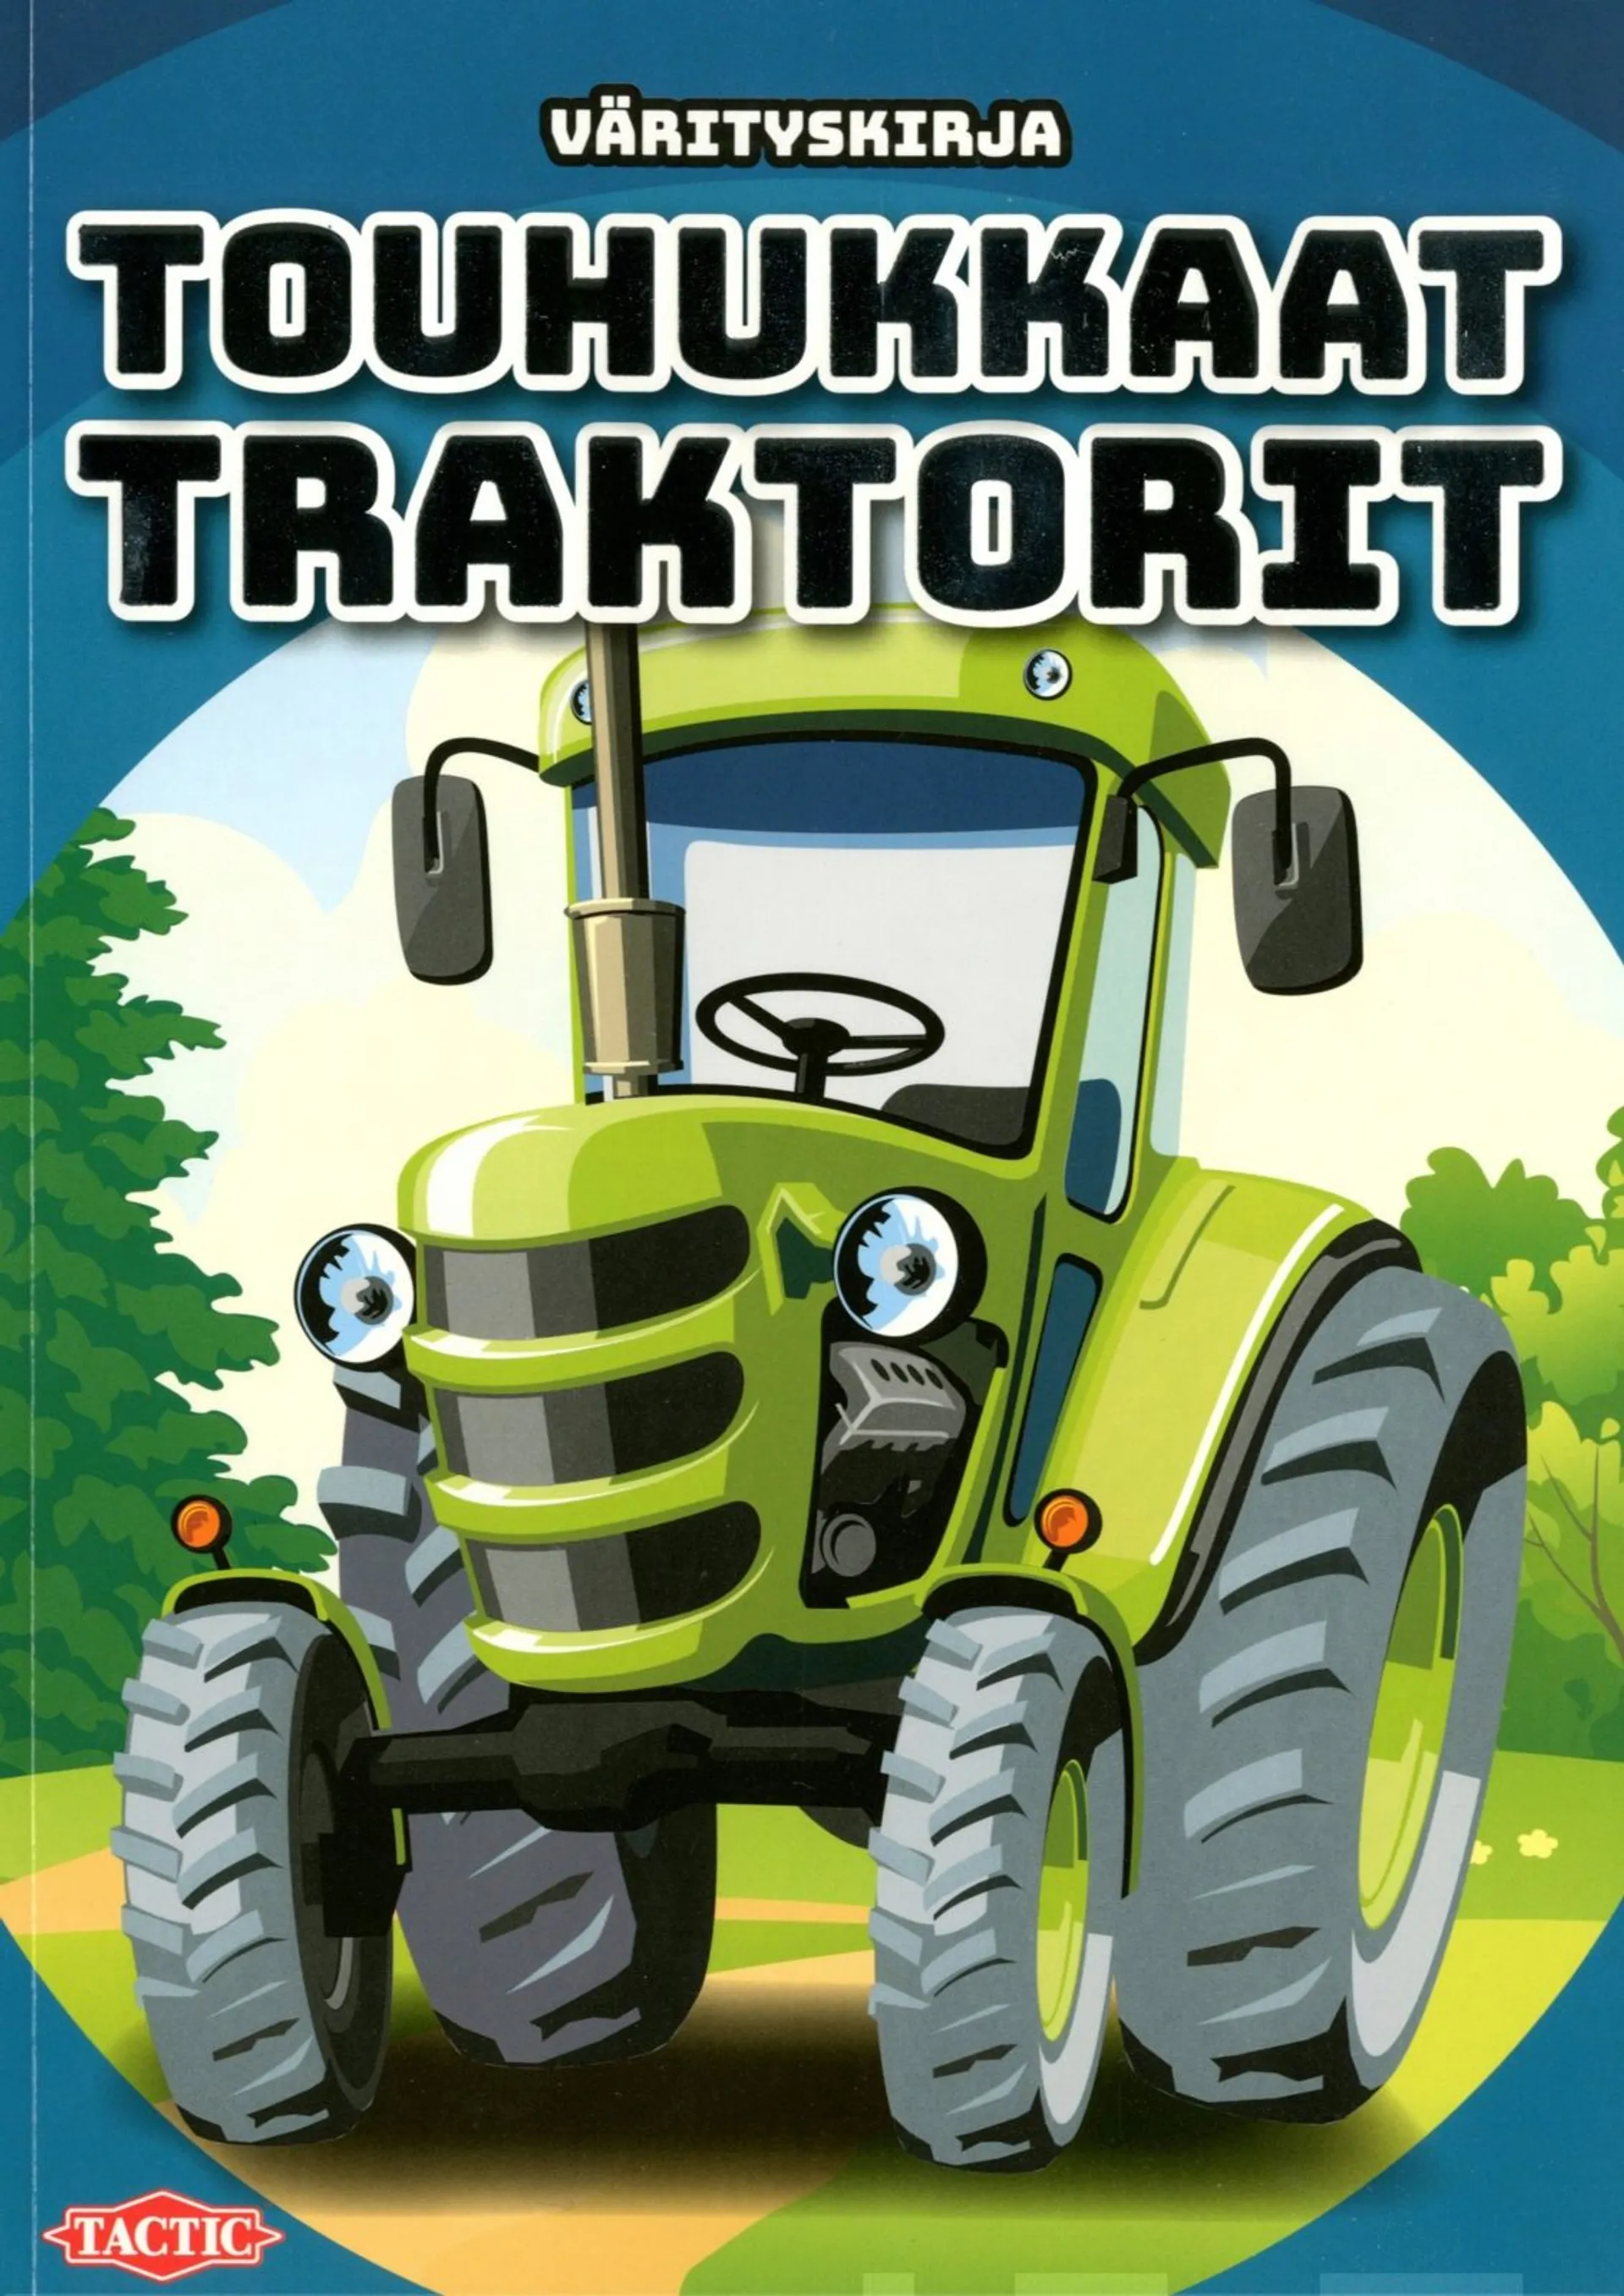 Touhukkaat traktorit - värityskirja